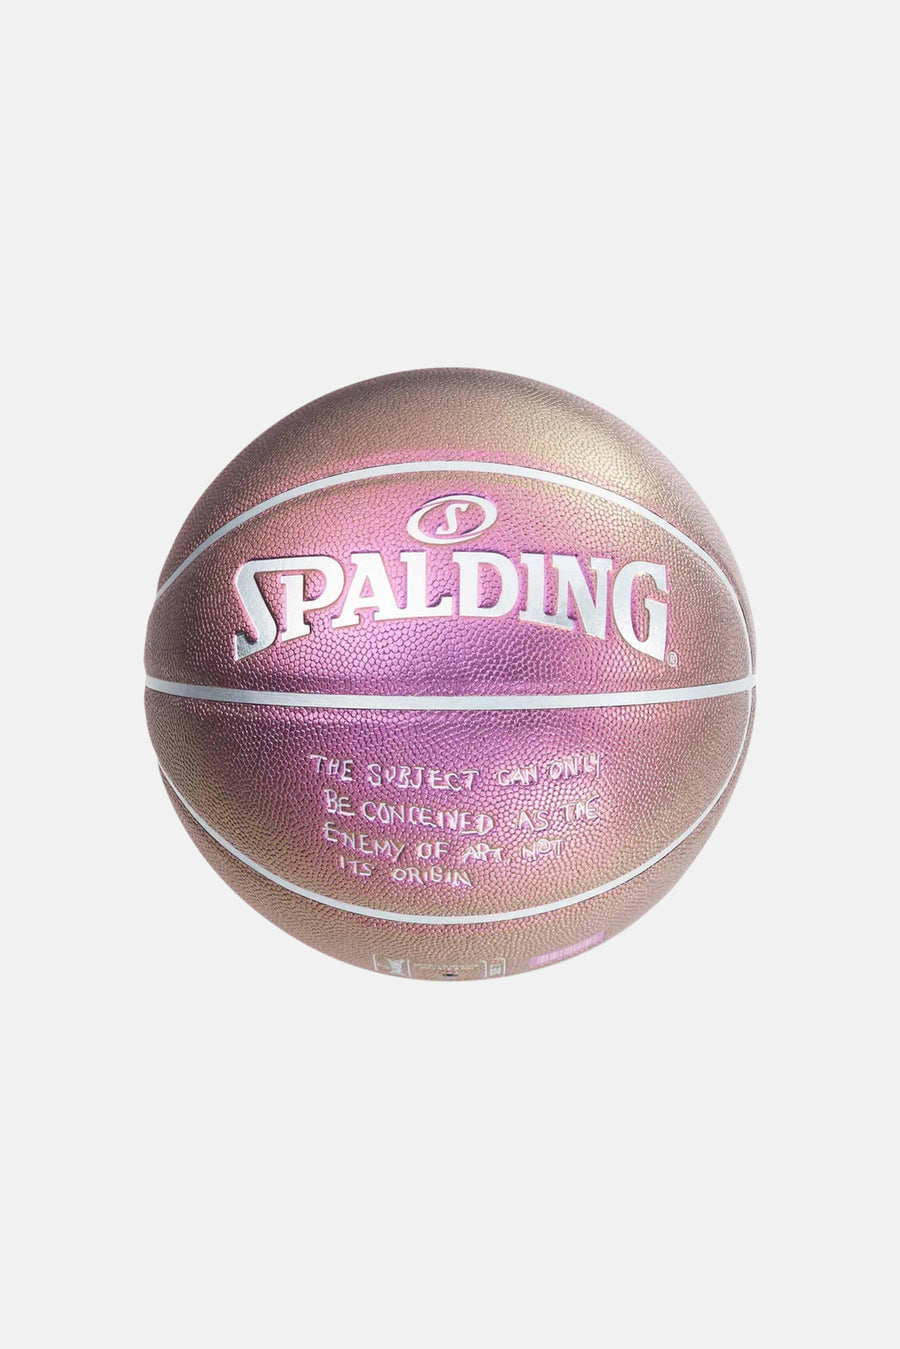 Supreme Bernadette Corporation Spalding Basketball